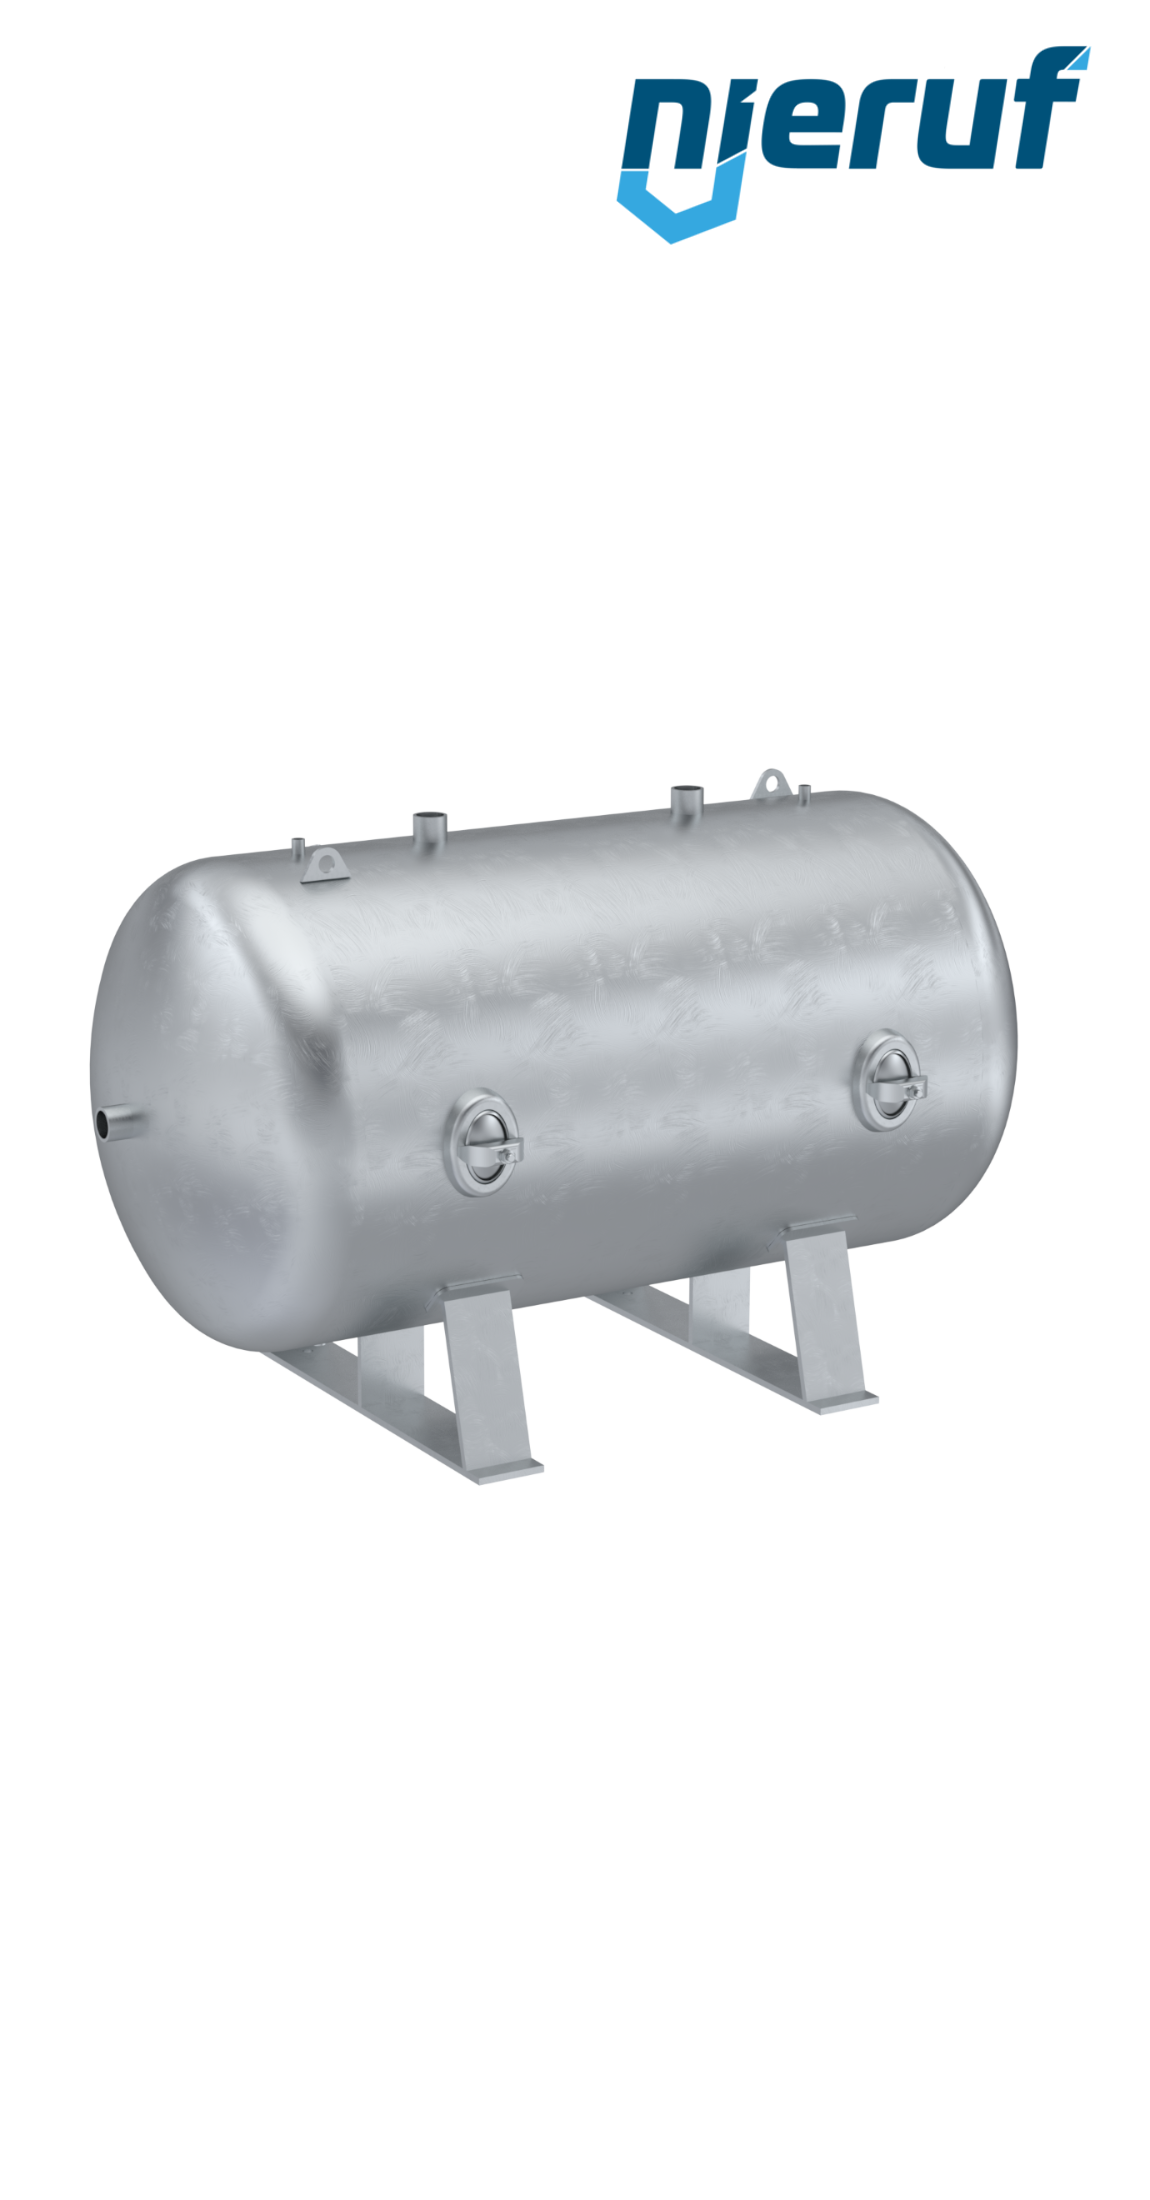 Serbatoio a pressione orizzontale BE01 10000 litri, 0-16 bar, acciaio zincato, diametro 1800 mm